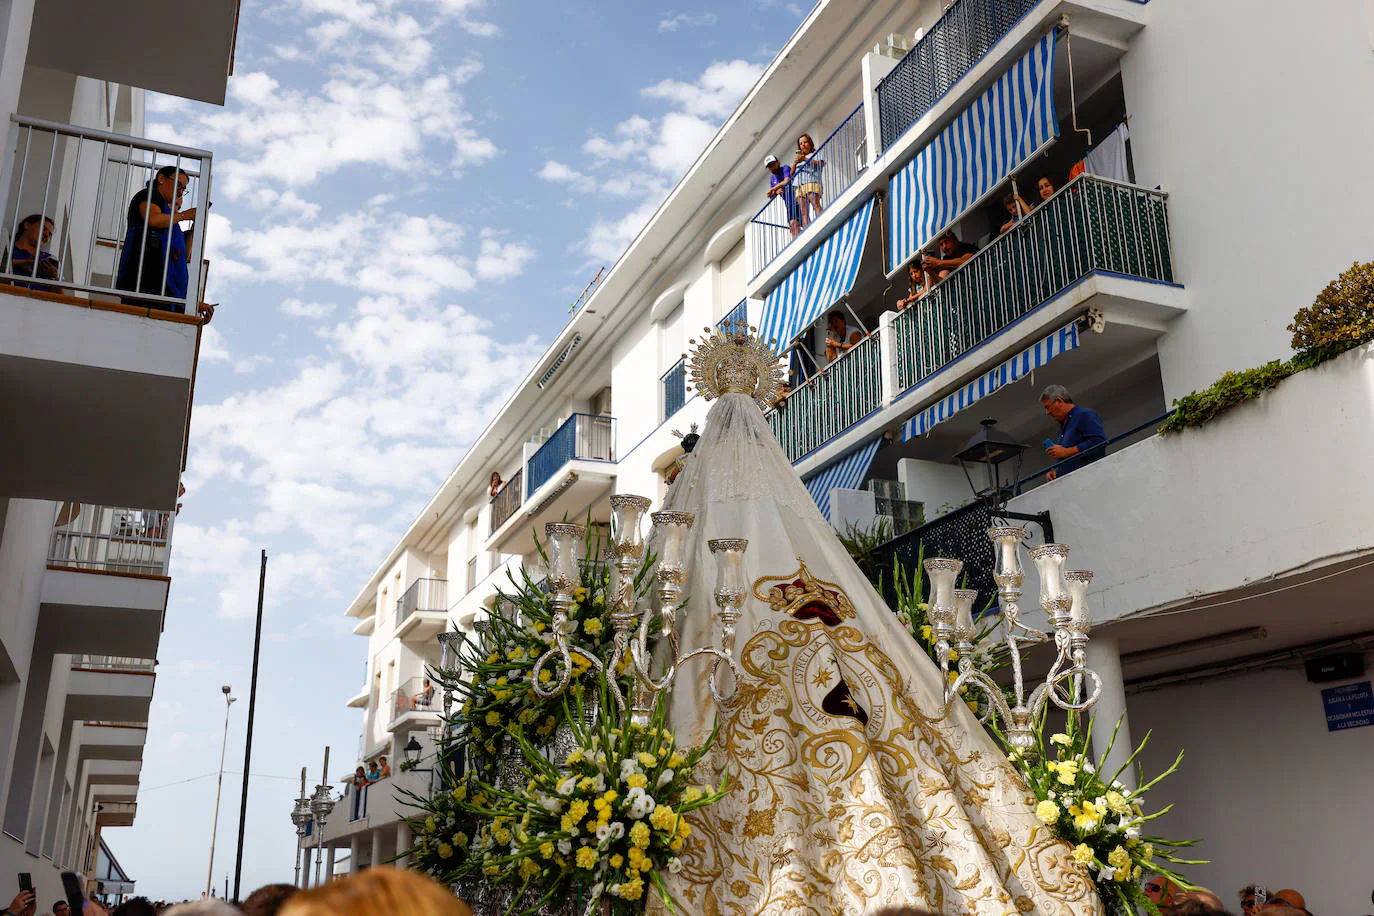 La devoción se desborda con la festividad de la Virgen del Carmen, patrona de las gentes de la mar